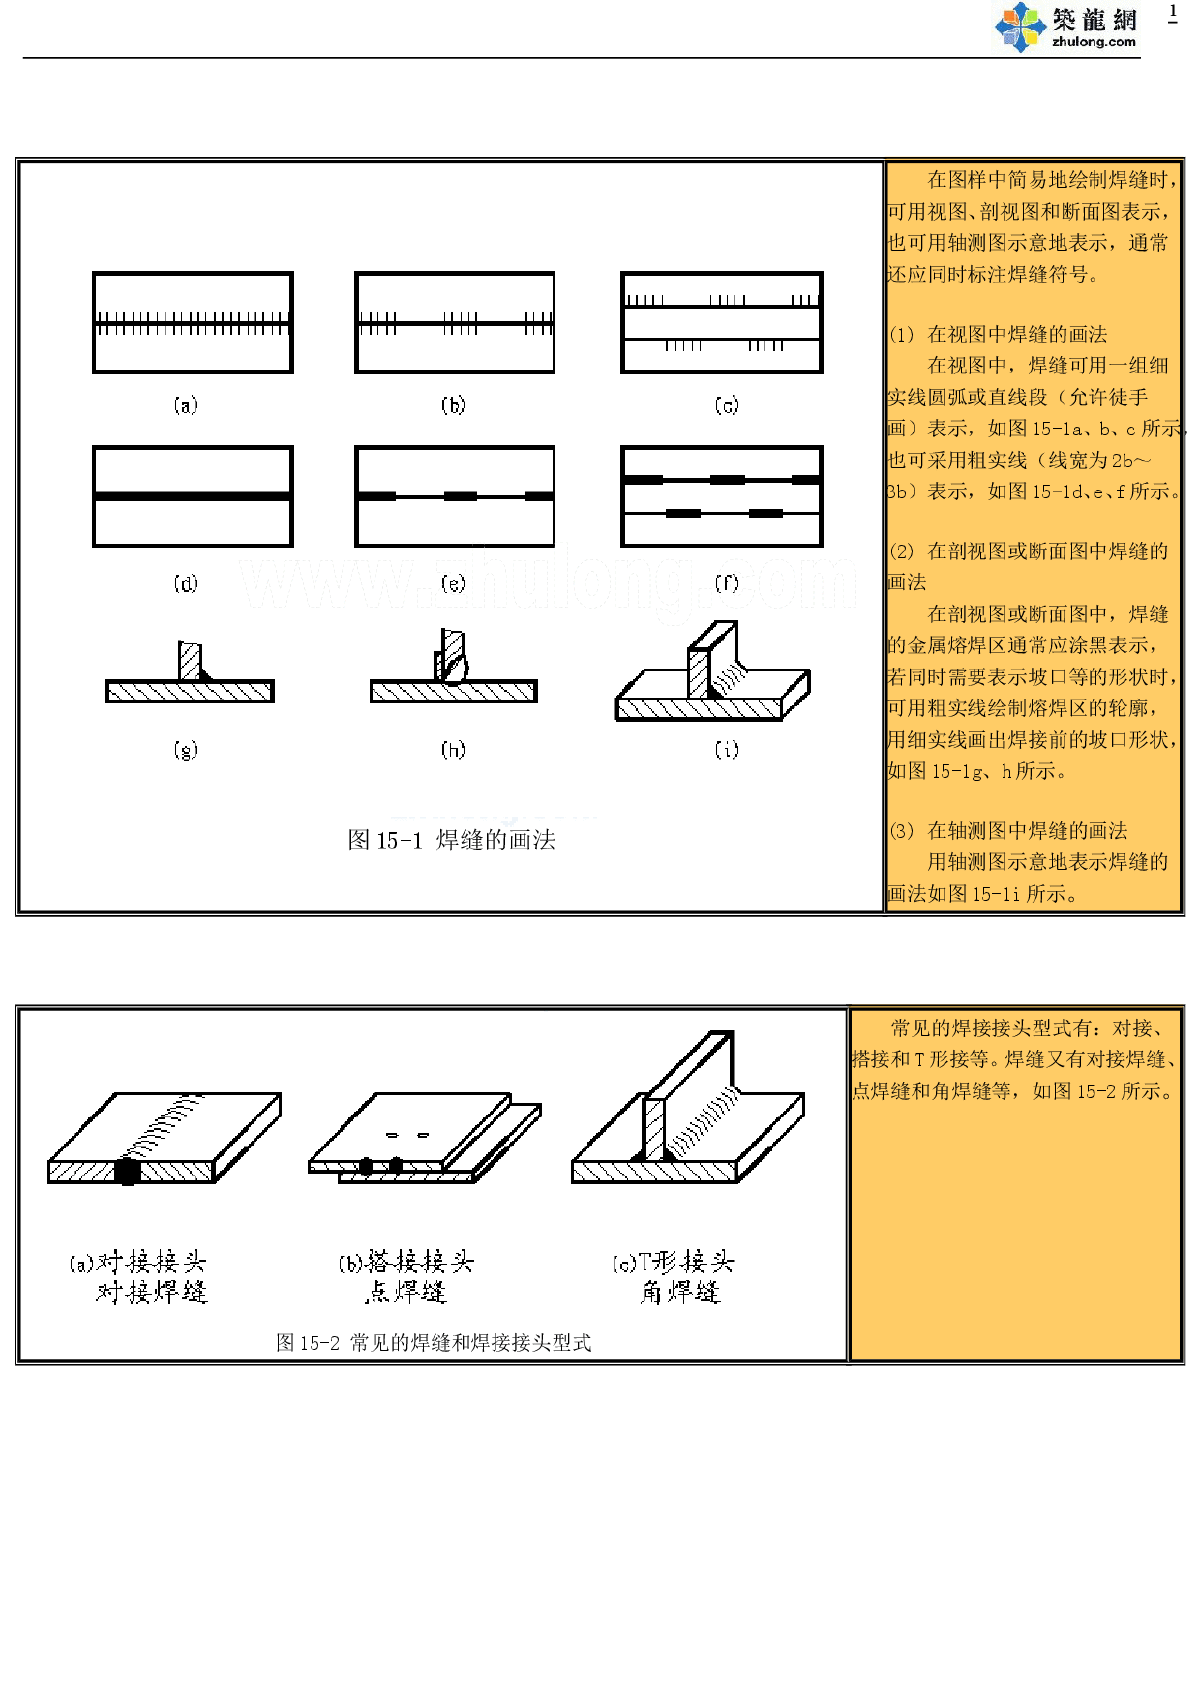 钢结构工程焊缝表示符号及画法（基本）